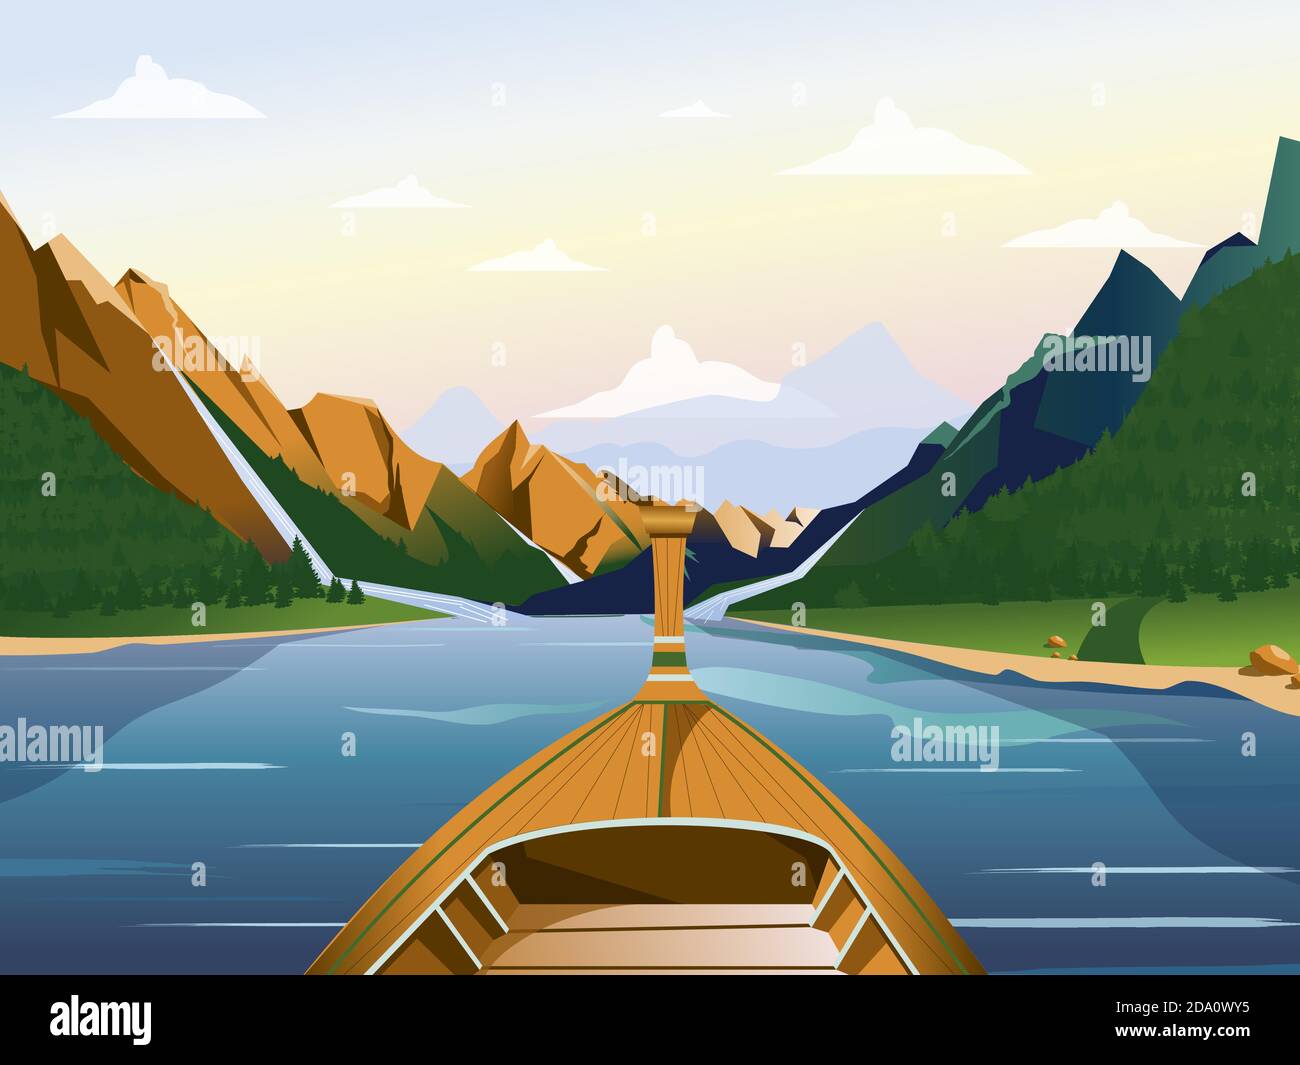 Bateau sur le lac dans une région montagneuse avec illustration vectorielle de forêts. Illustration de Vecteur